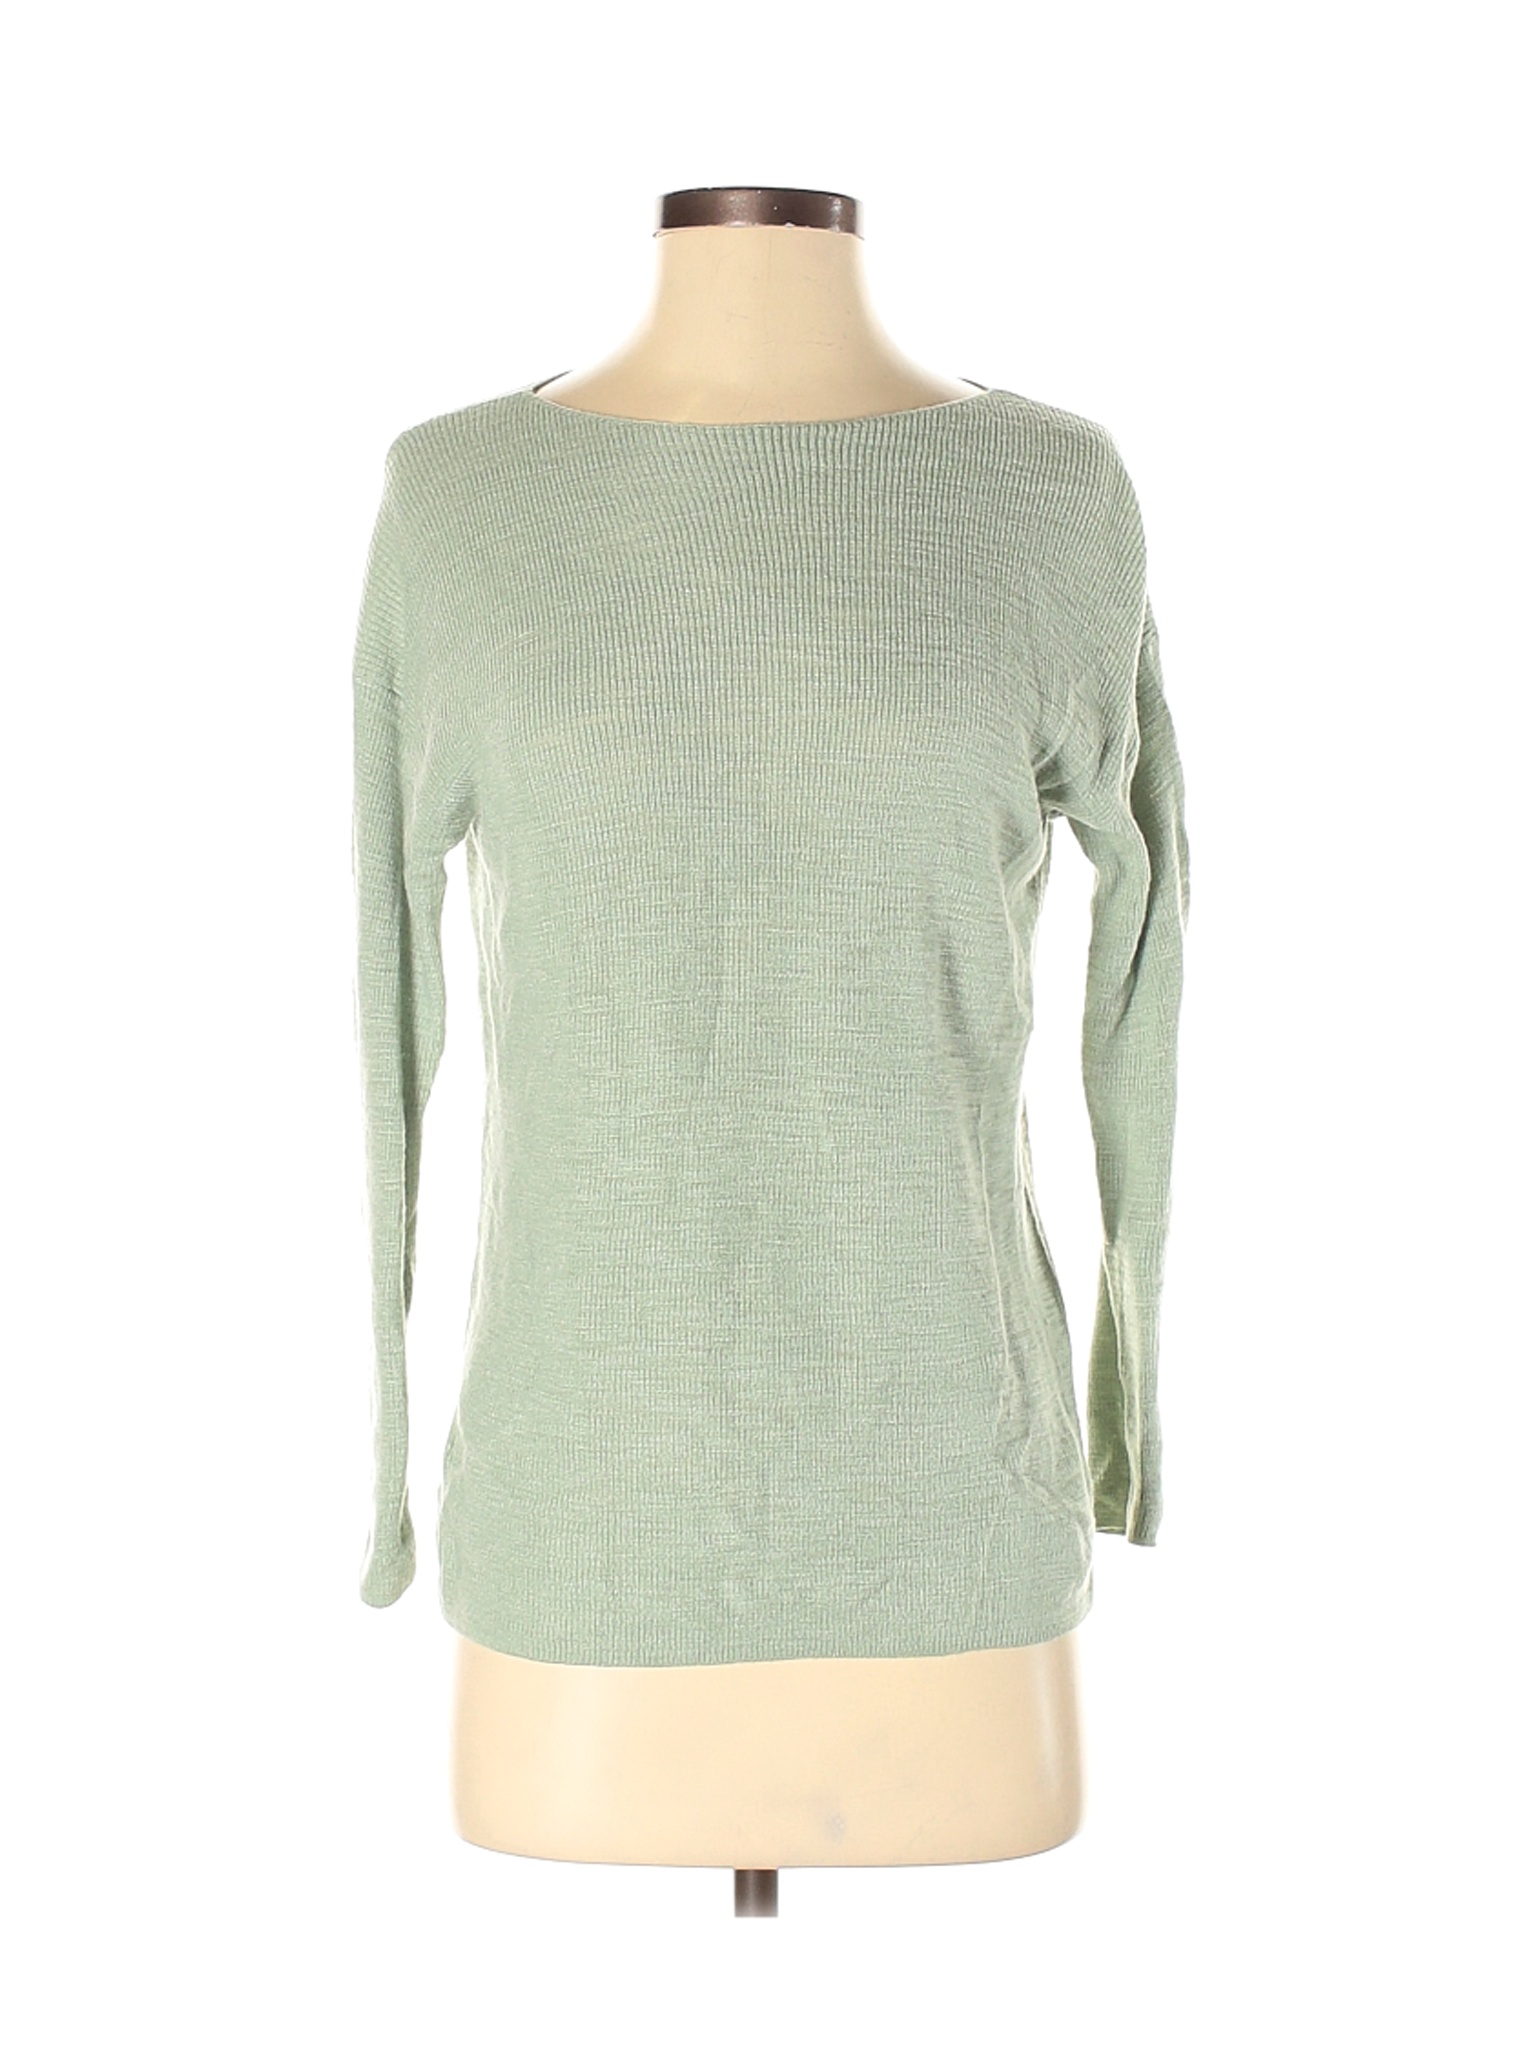 Lou & Grey Women Green Long Sleeve Top XS | eBay